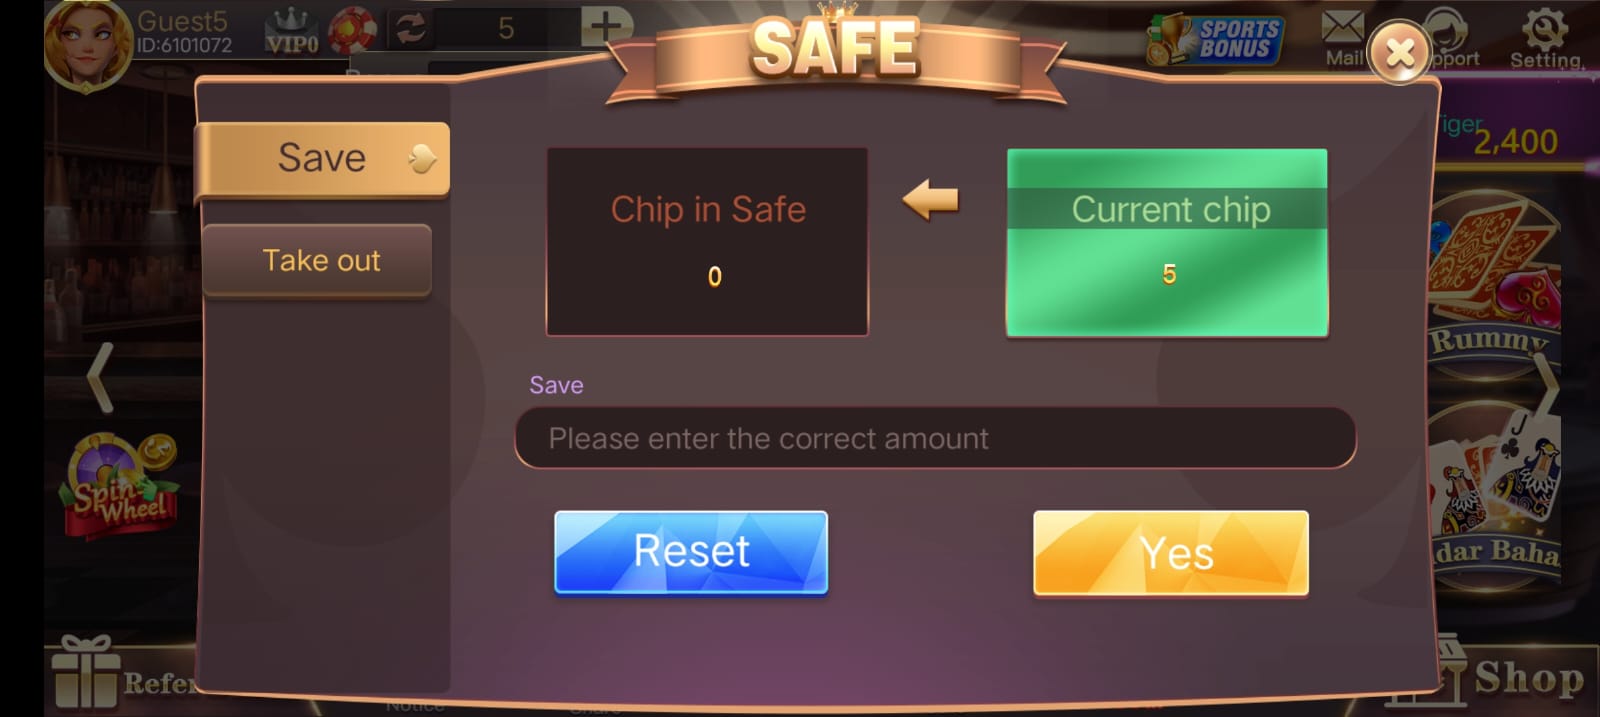 Safe Button Program In 3 Patti Fun App